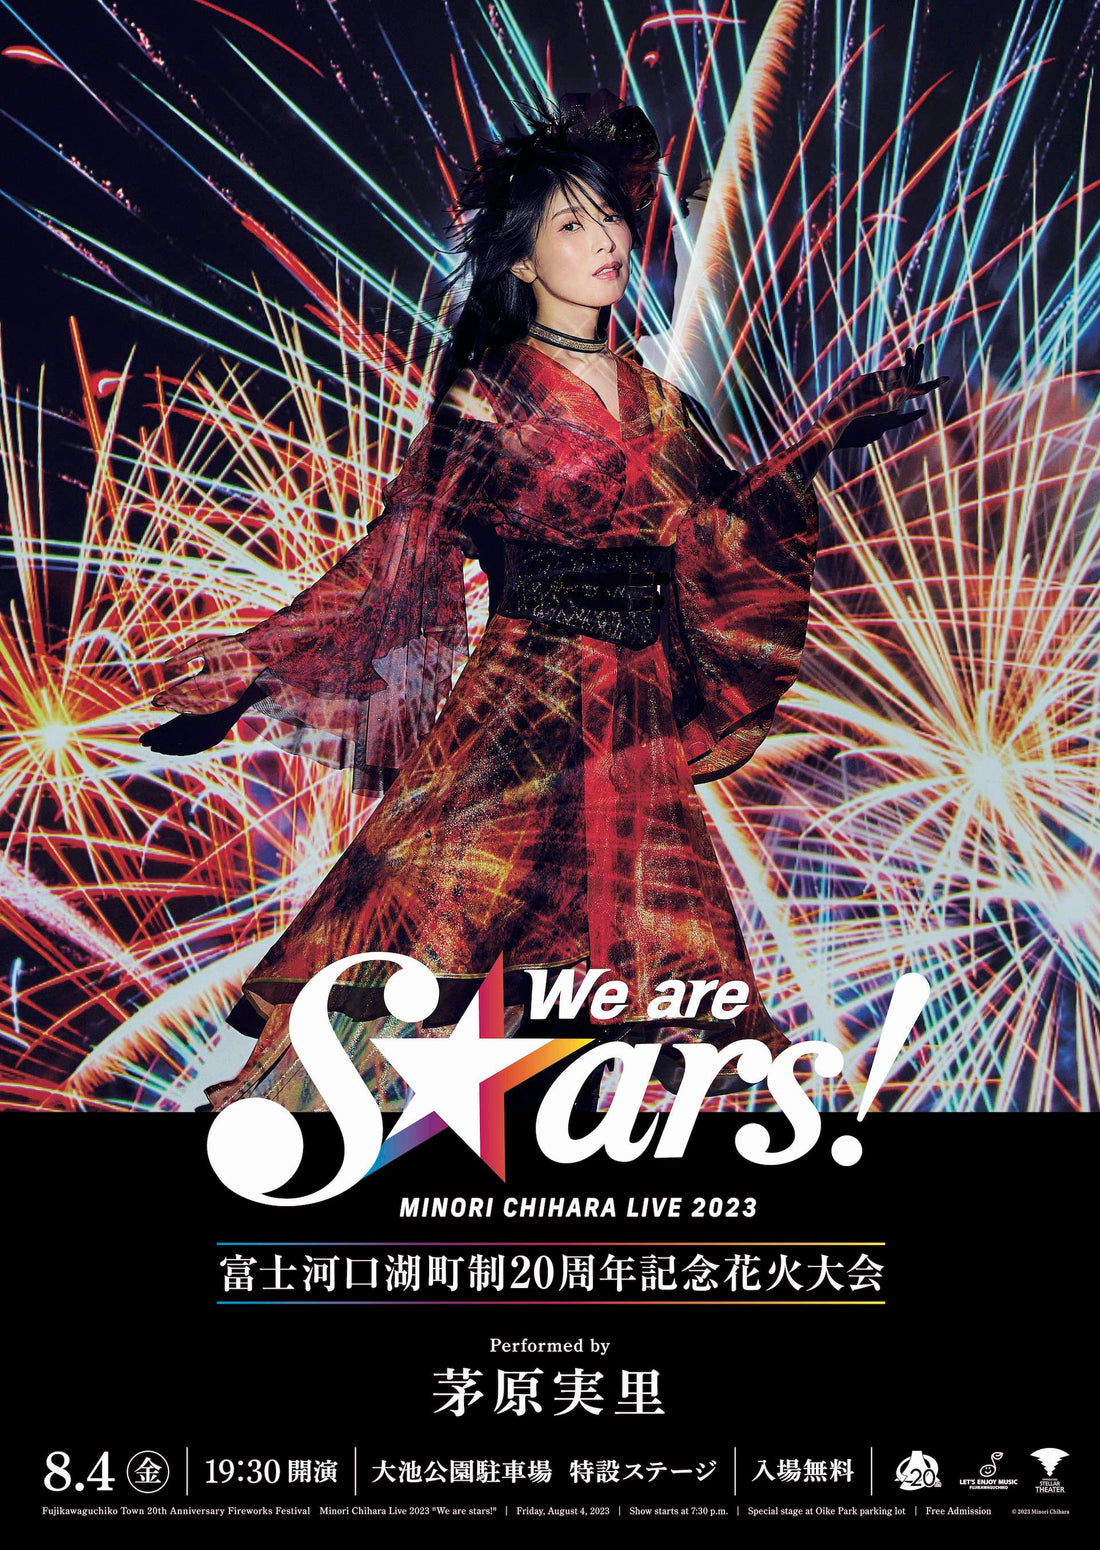 『茅原実里 LIVE 2023 “We are stars!”』セットリスト予想キャンペーンを実施